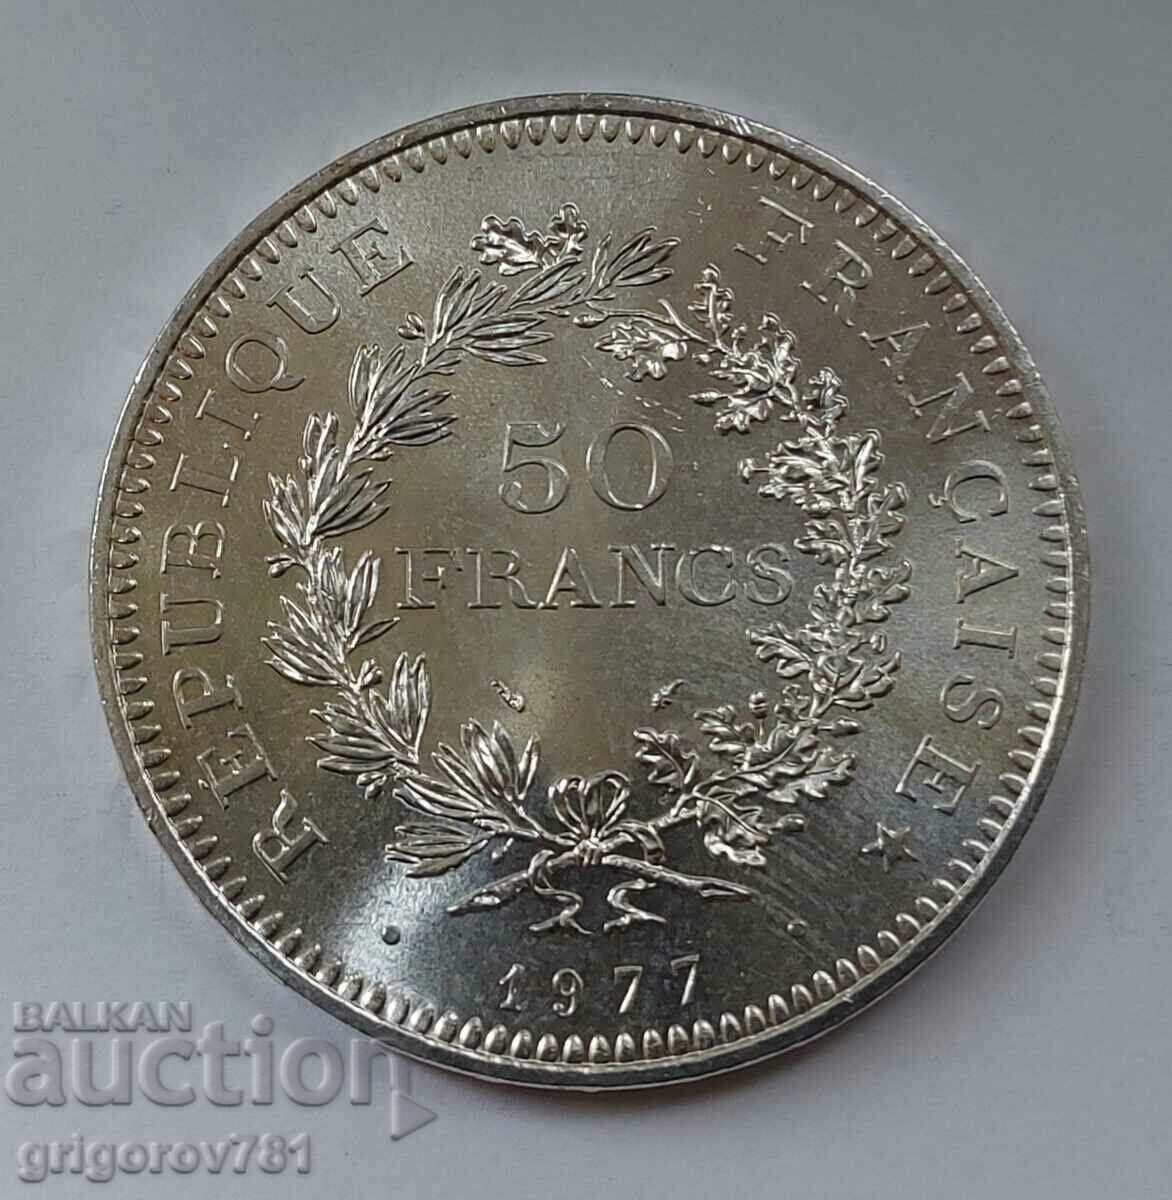 Ασήμι 50 φράγκων Γαλλία 1977 - Ασημένιο νόμισμα #1